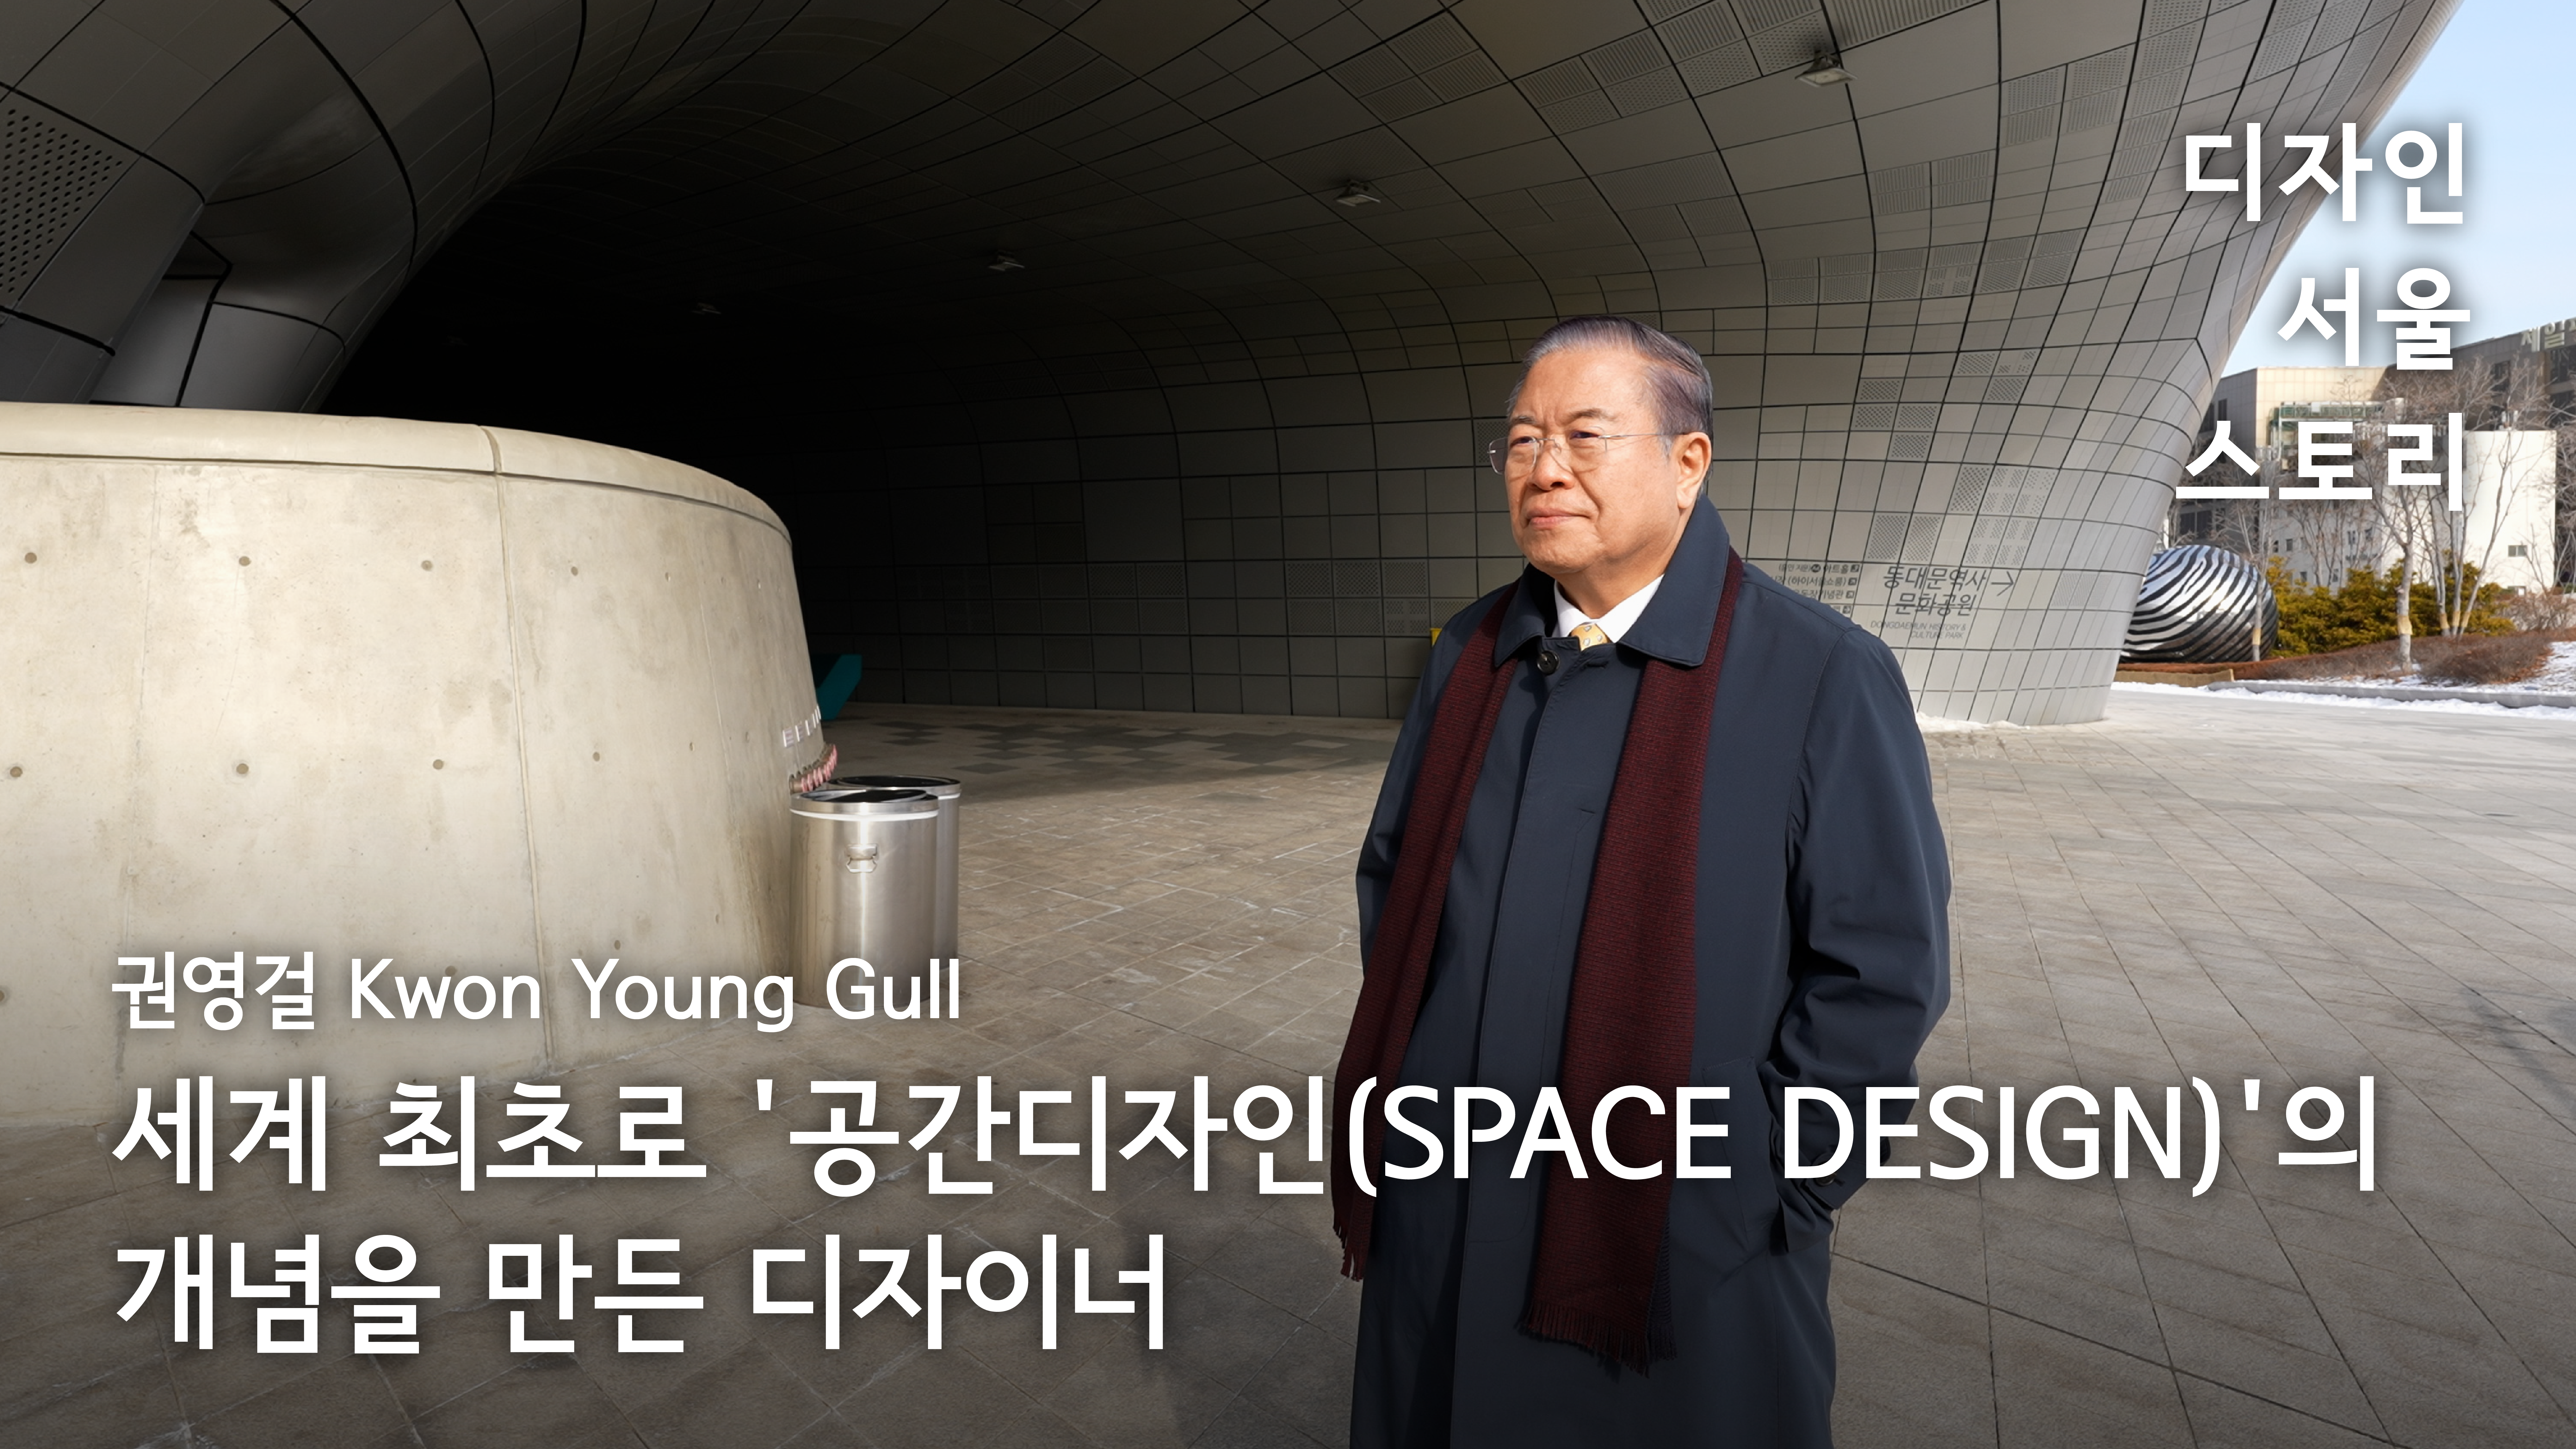 디자인 서울 스토리 - 권영걸(Kwon Young Gull) 세계 최초로 '공간디자인(SPACE DESIGN)'의 개념을 만든 디자이너